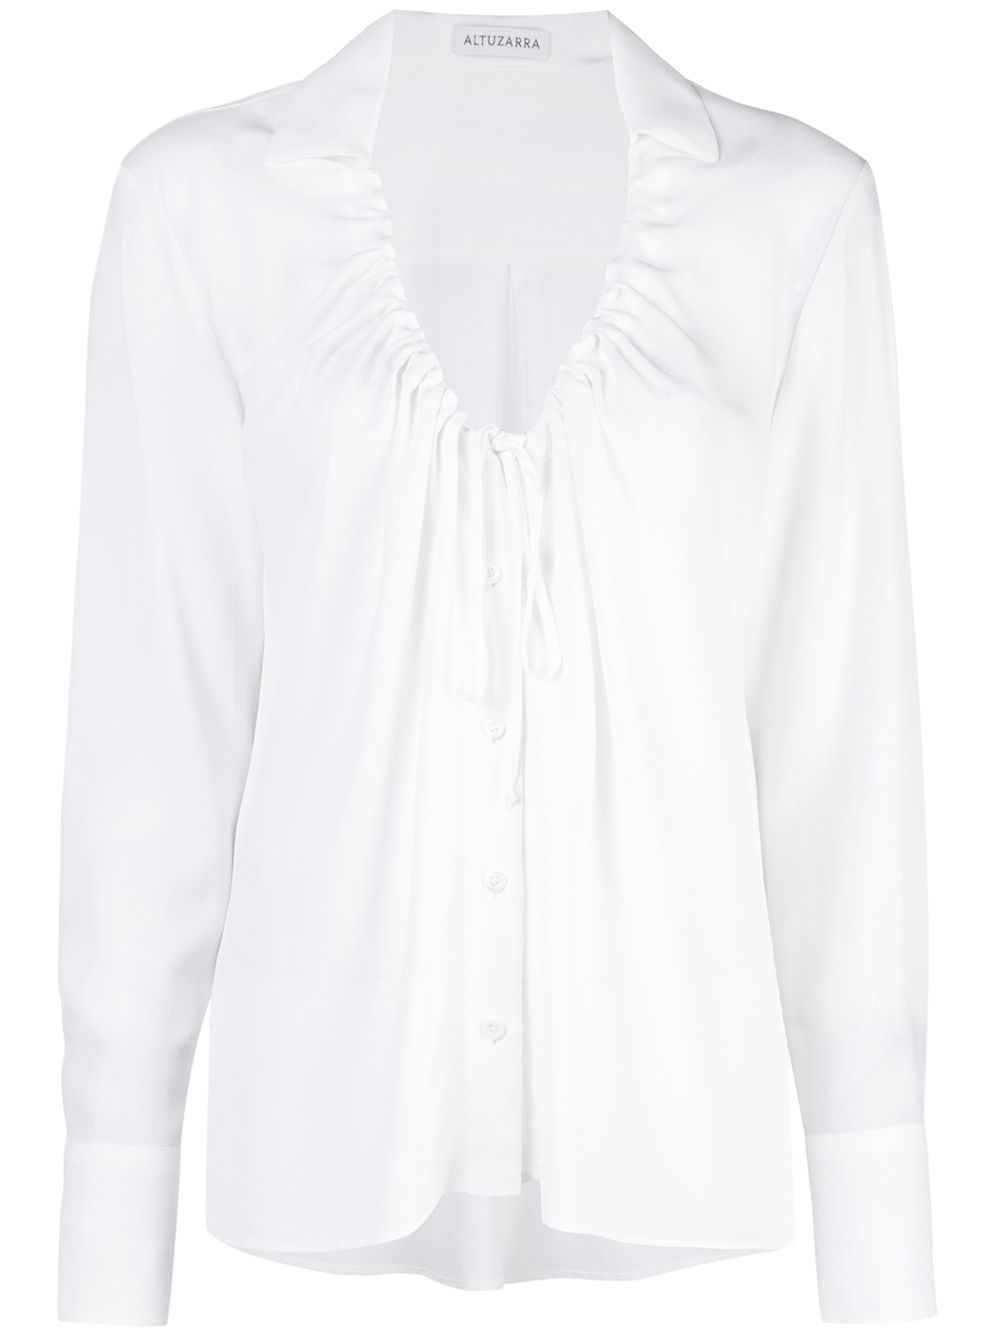 фото Altuzarra блузка с присборенным воротником